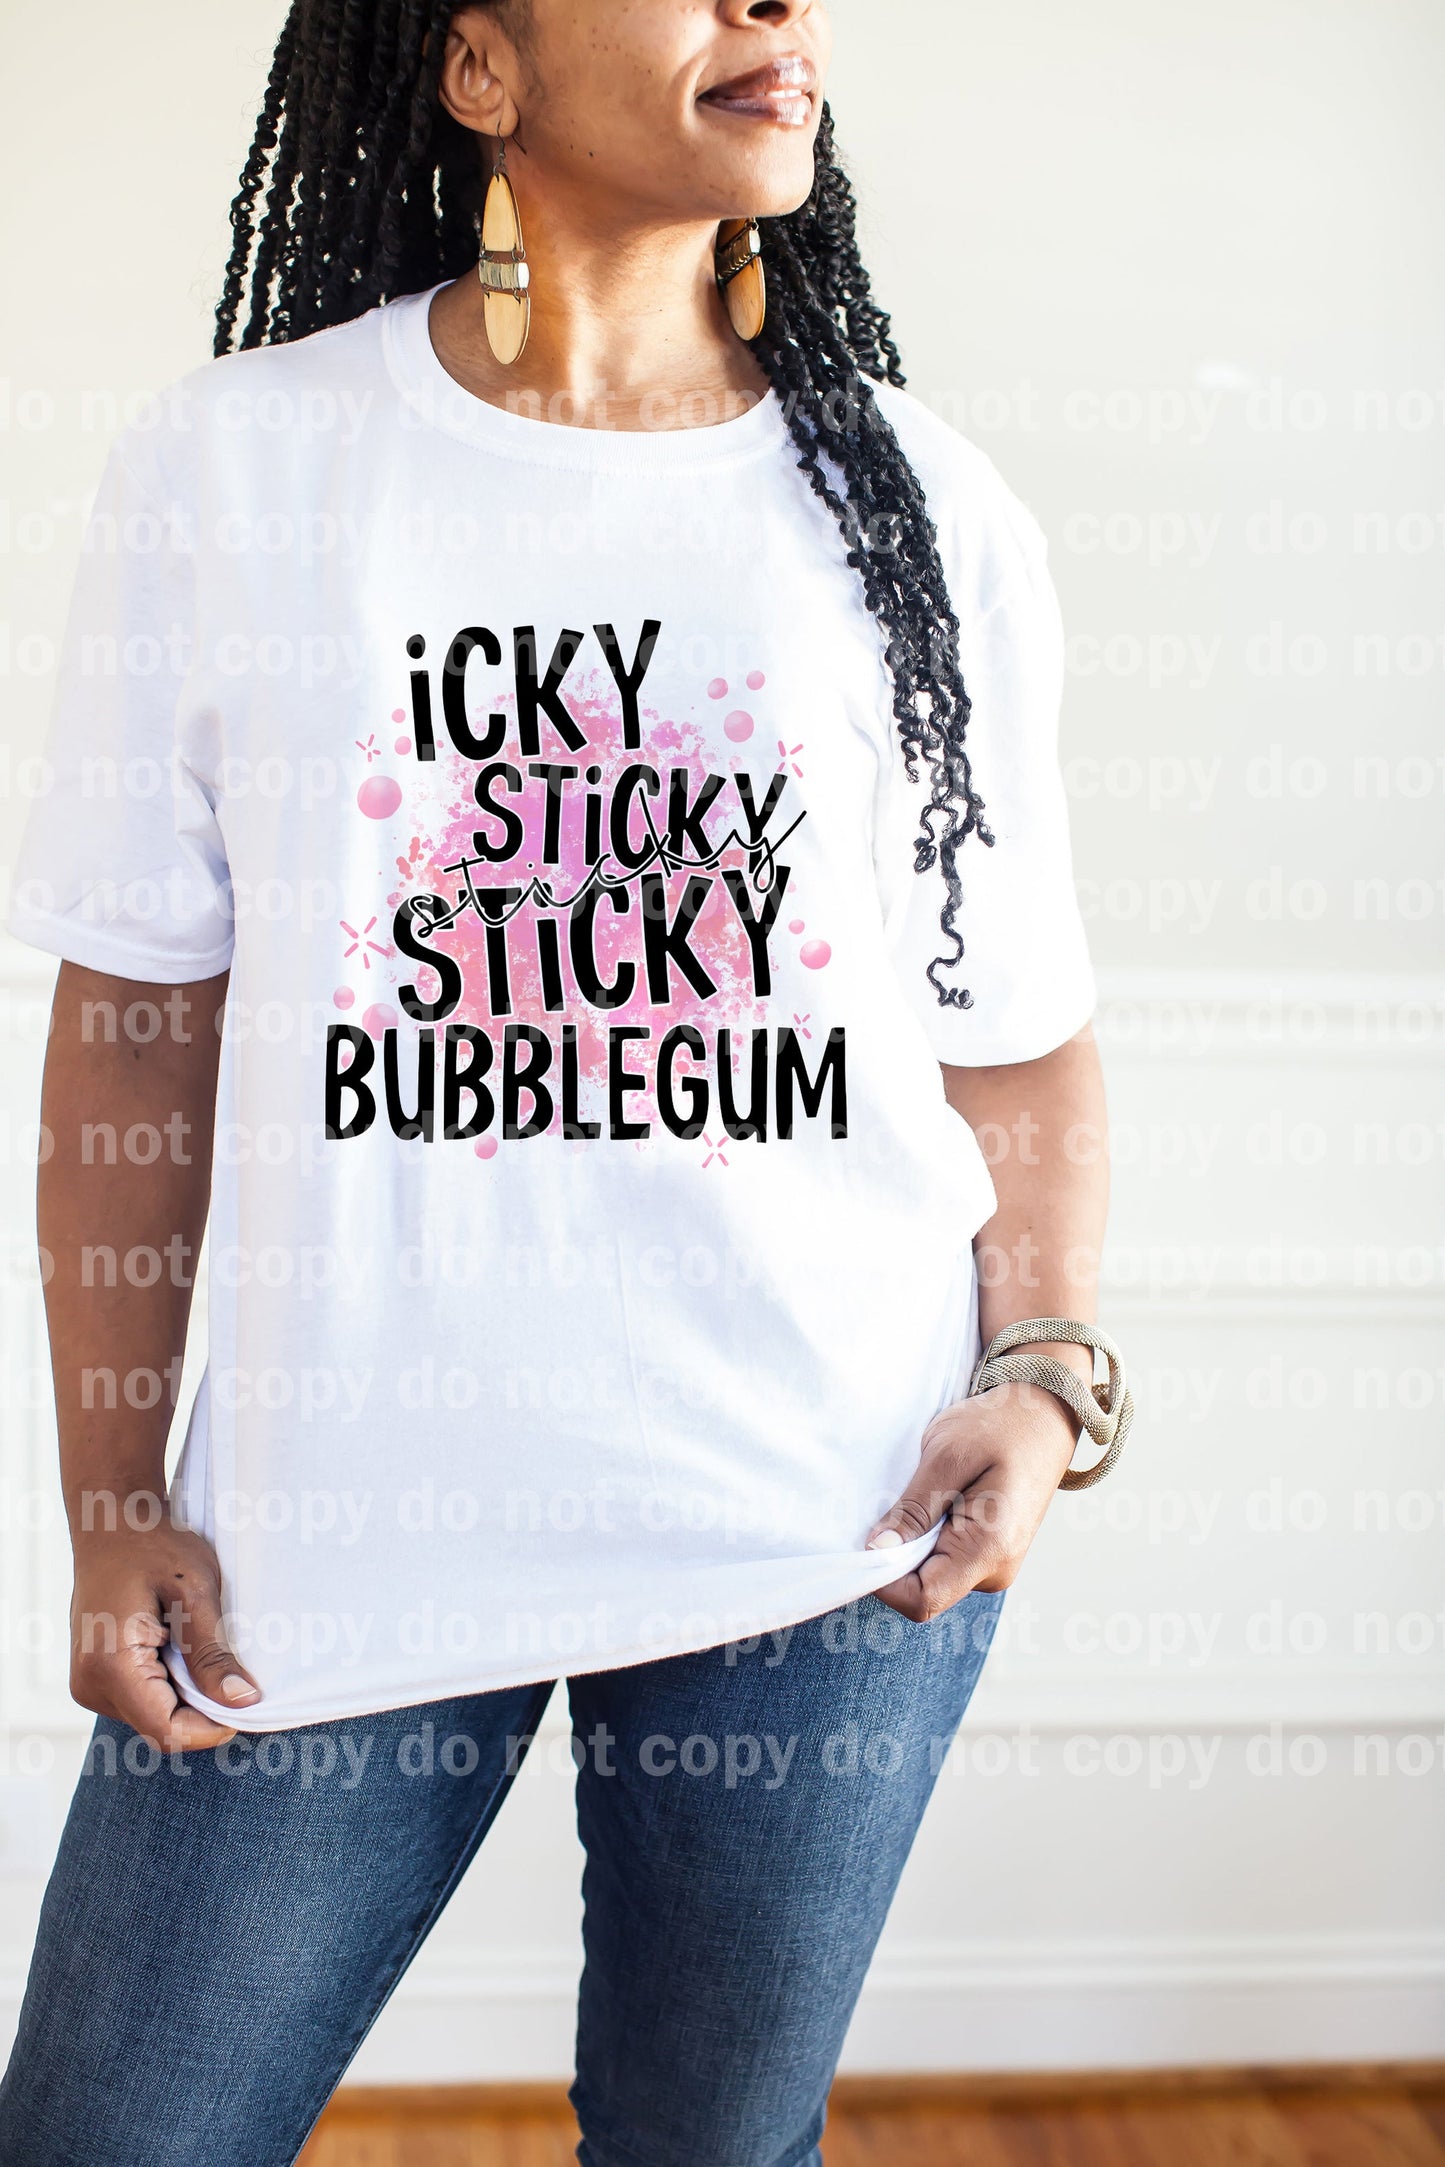 Icky Sticky Sticky Bubblegum Blue/Pink Dream Print or Sublimation Print